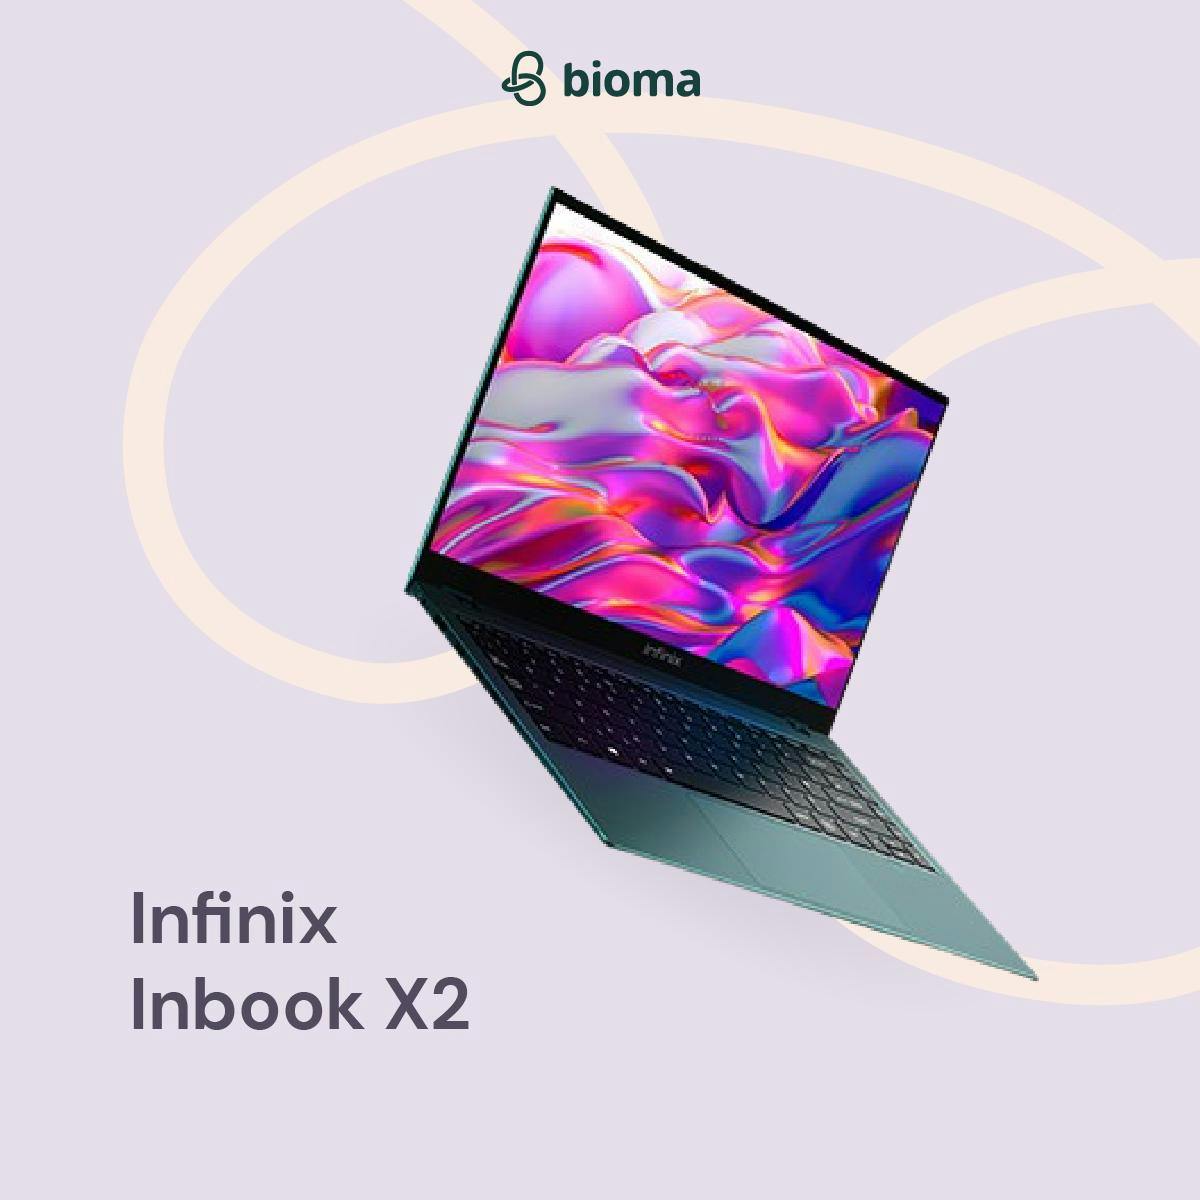 Infinix Inbook X2